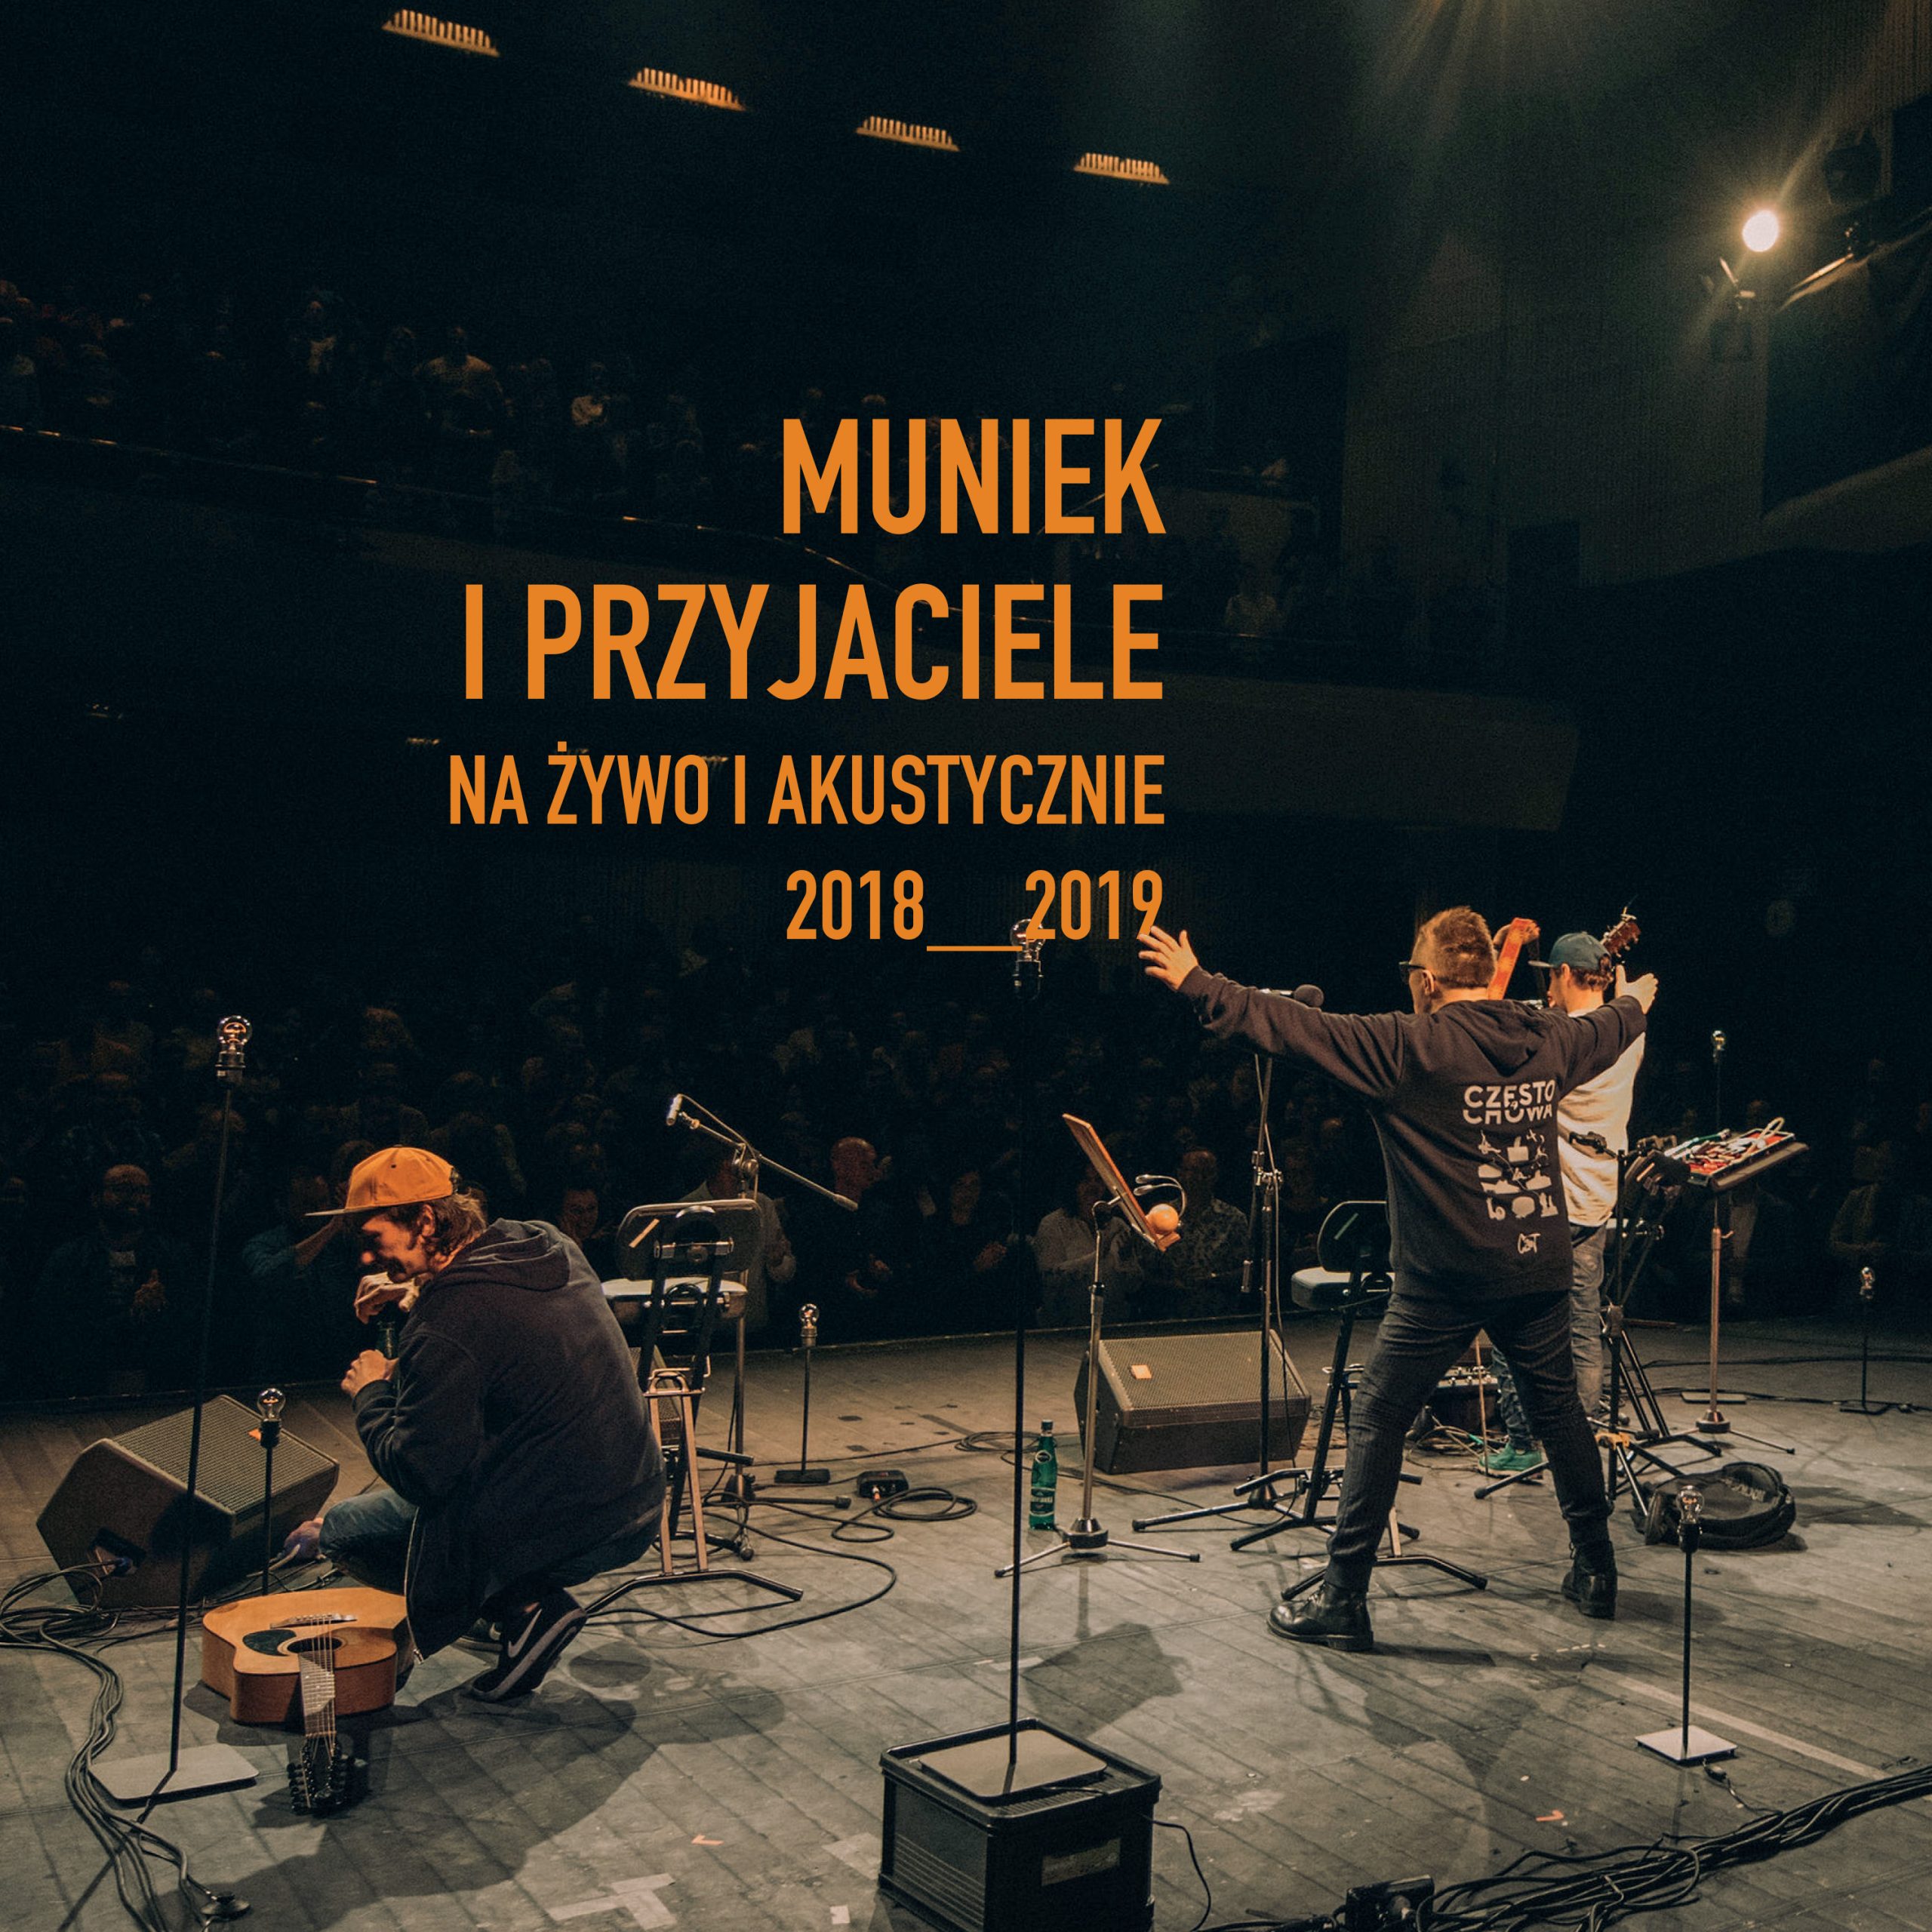 Nowa płyta Muńka Staszczyka. "Muniek i Przyjaciele. Na żywo i akustycznie 2018-2019" 8